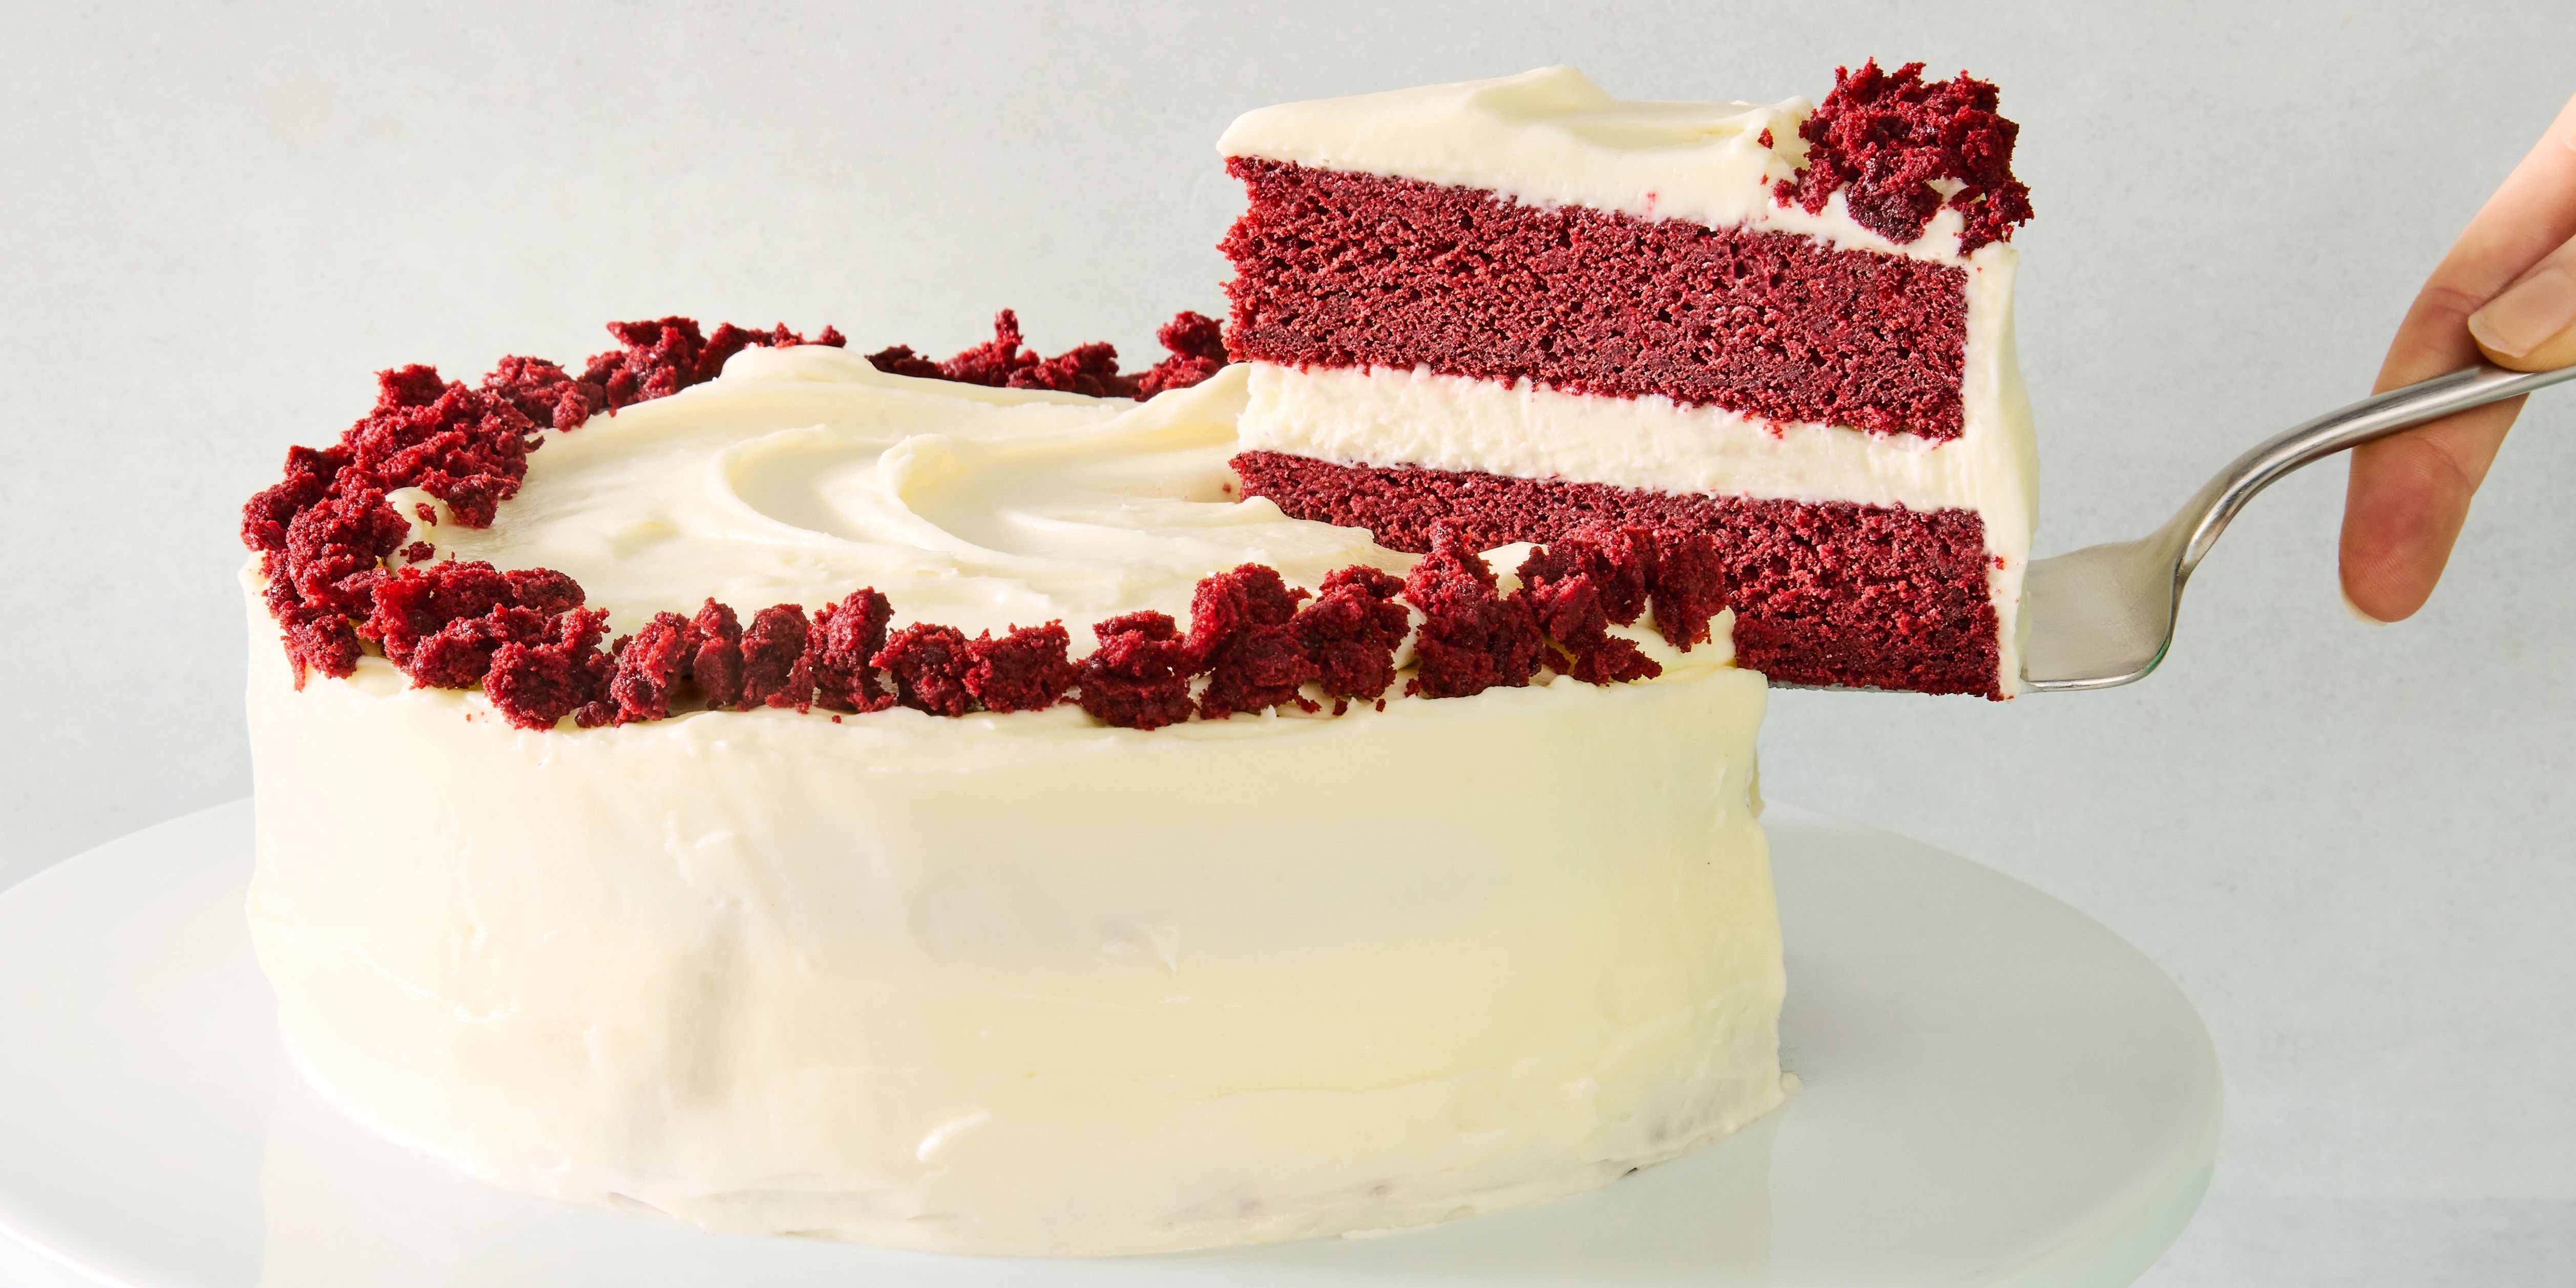 Best Red Velvet Cake Cake Recipe - How To Make Red Velvet Cake